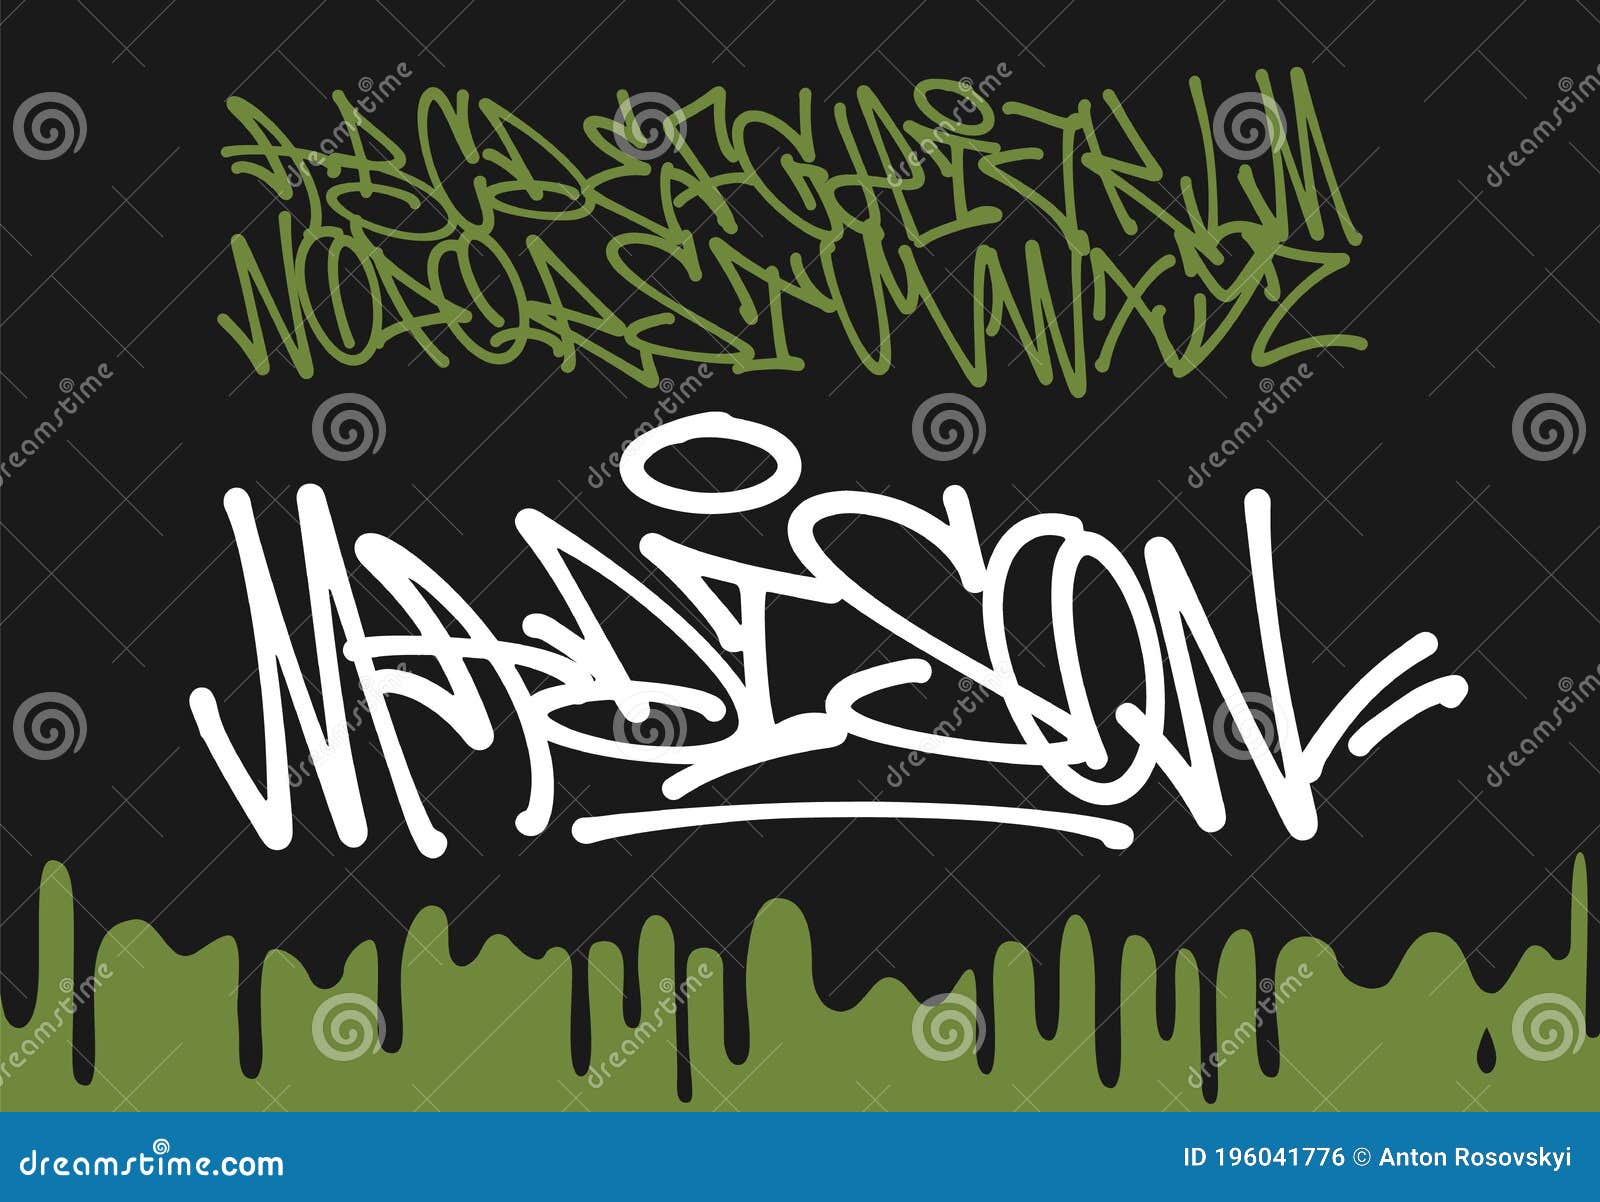 Marker Graffiti Font tipografia scritta a mano illustrazione vettoriale -  Vettoriale Stock di ©rosdesign 244089868